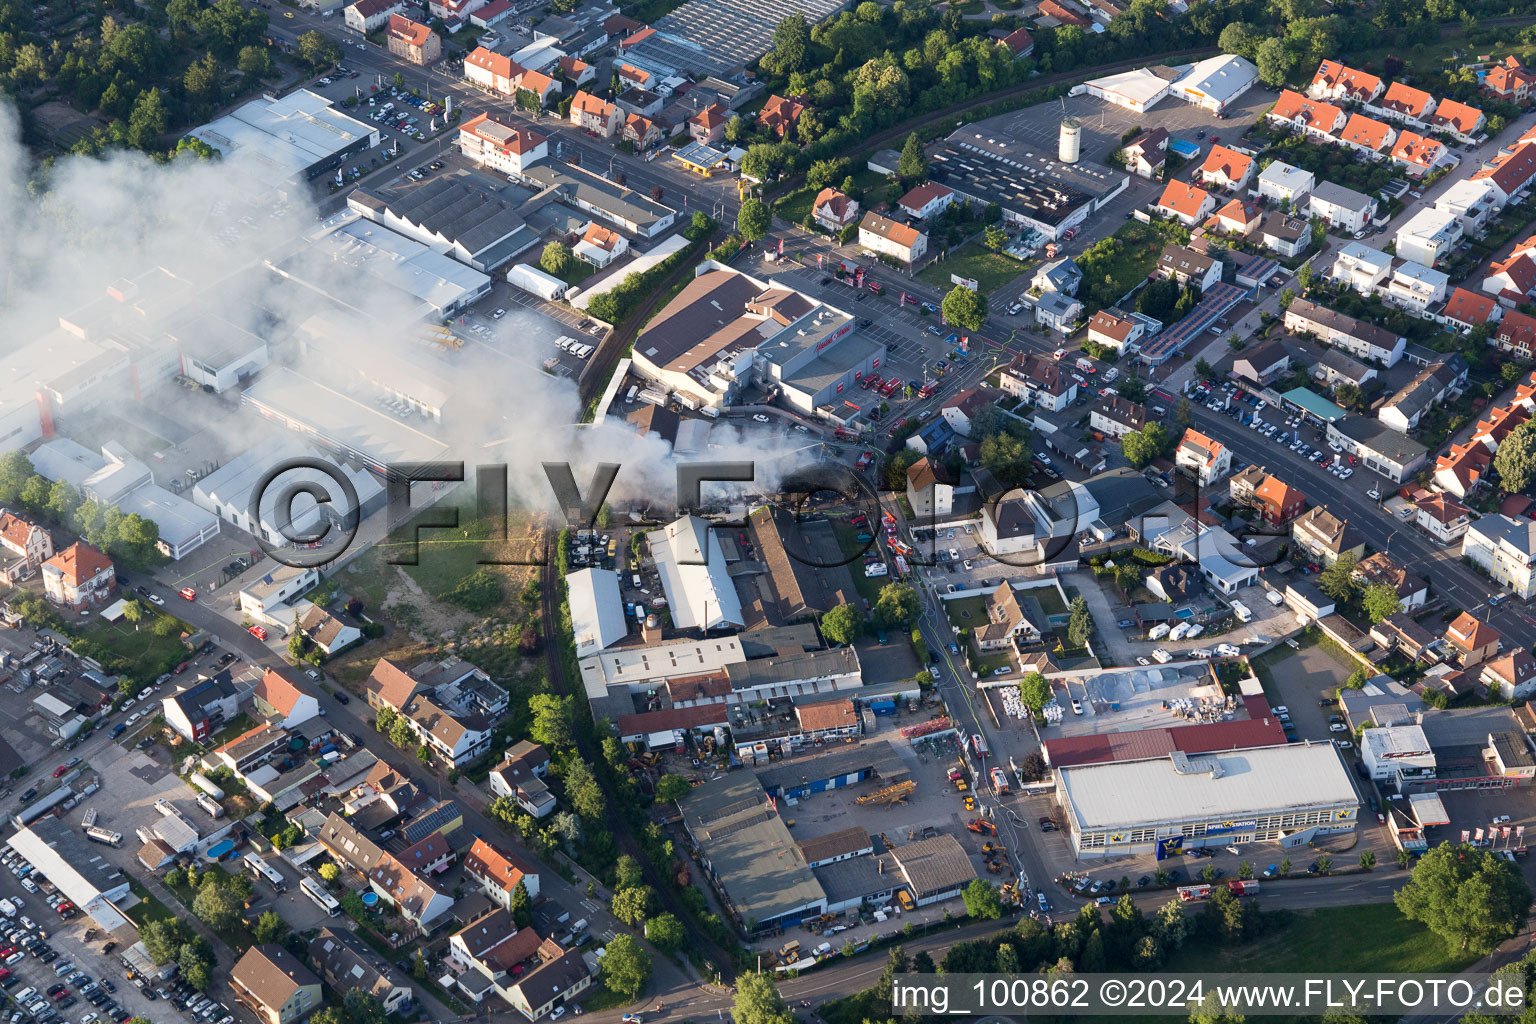 Vue aérienne de Formation de fumée et de flammes lors des travaux d'extinction d'un grand incendie dans un entrepôt d'antiquités et de vieilles voitures sur la Werkstrasse à Speyer dans le département Rhénanie-Palatinat, Allemagne